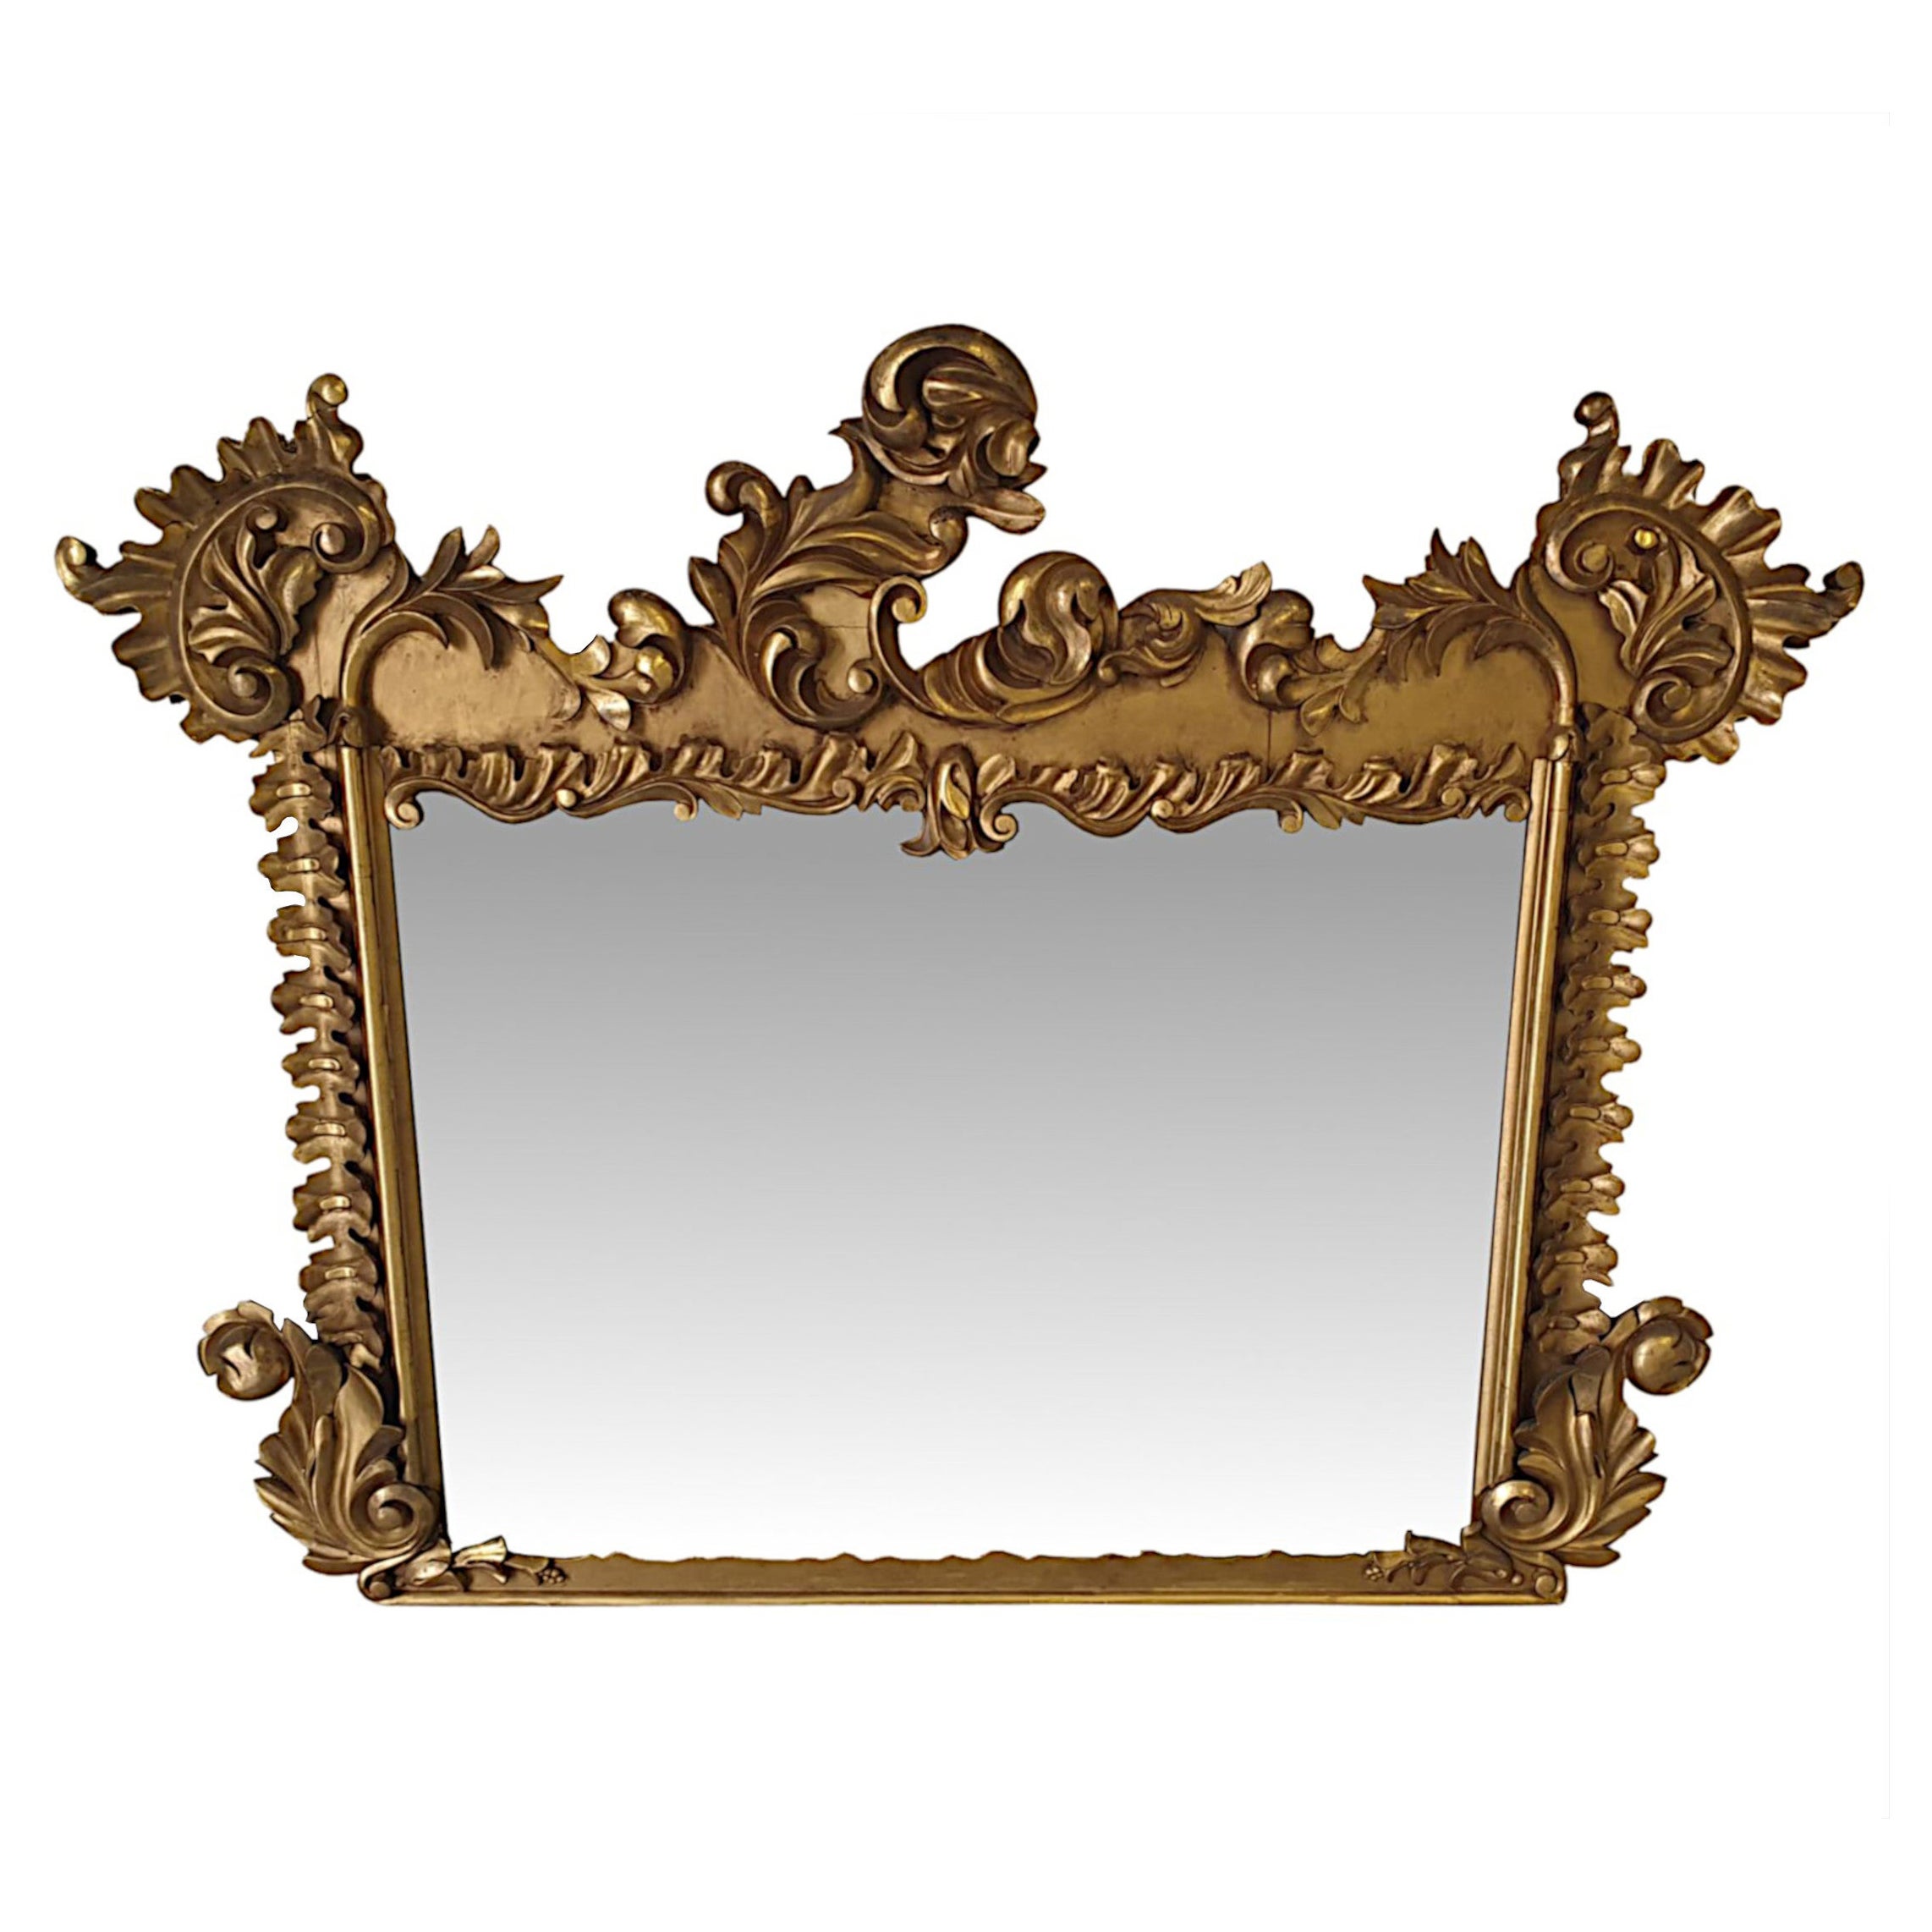 Irischer William IV.-Overmantle-Spiegel aus vergoldetem Holz, frühes 19. Jahrhundert